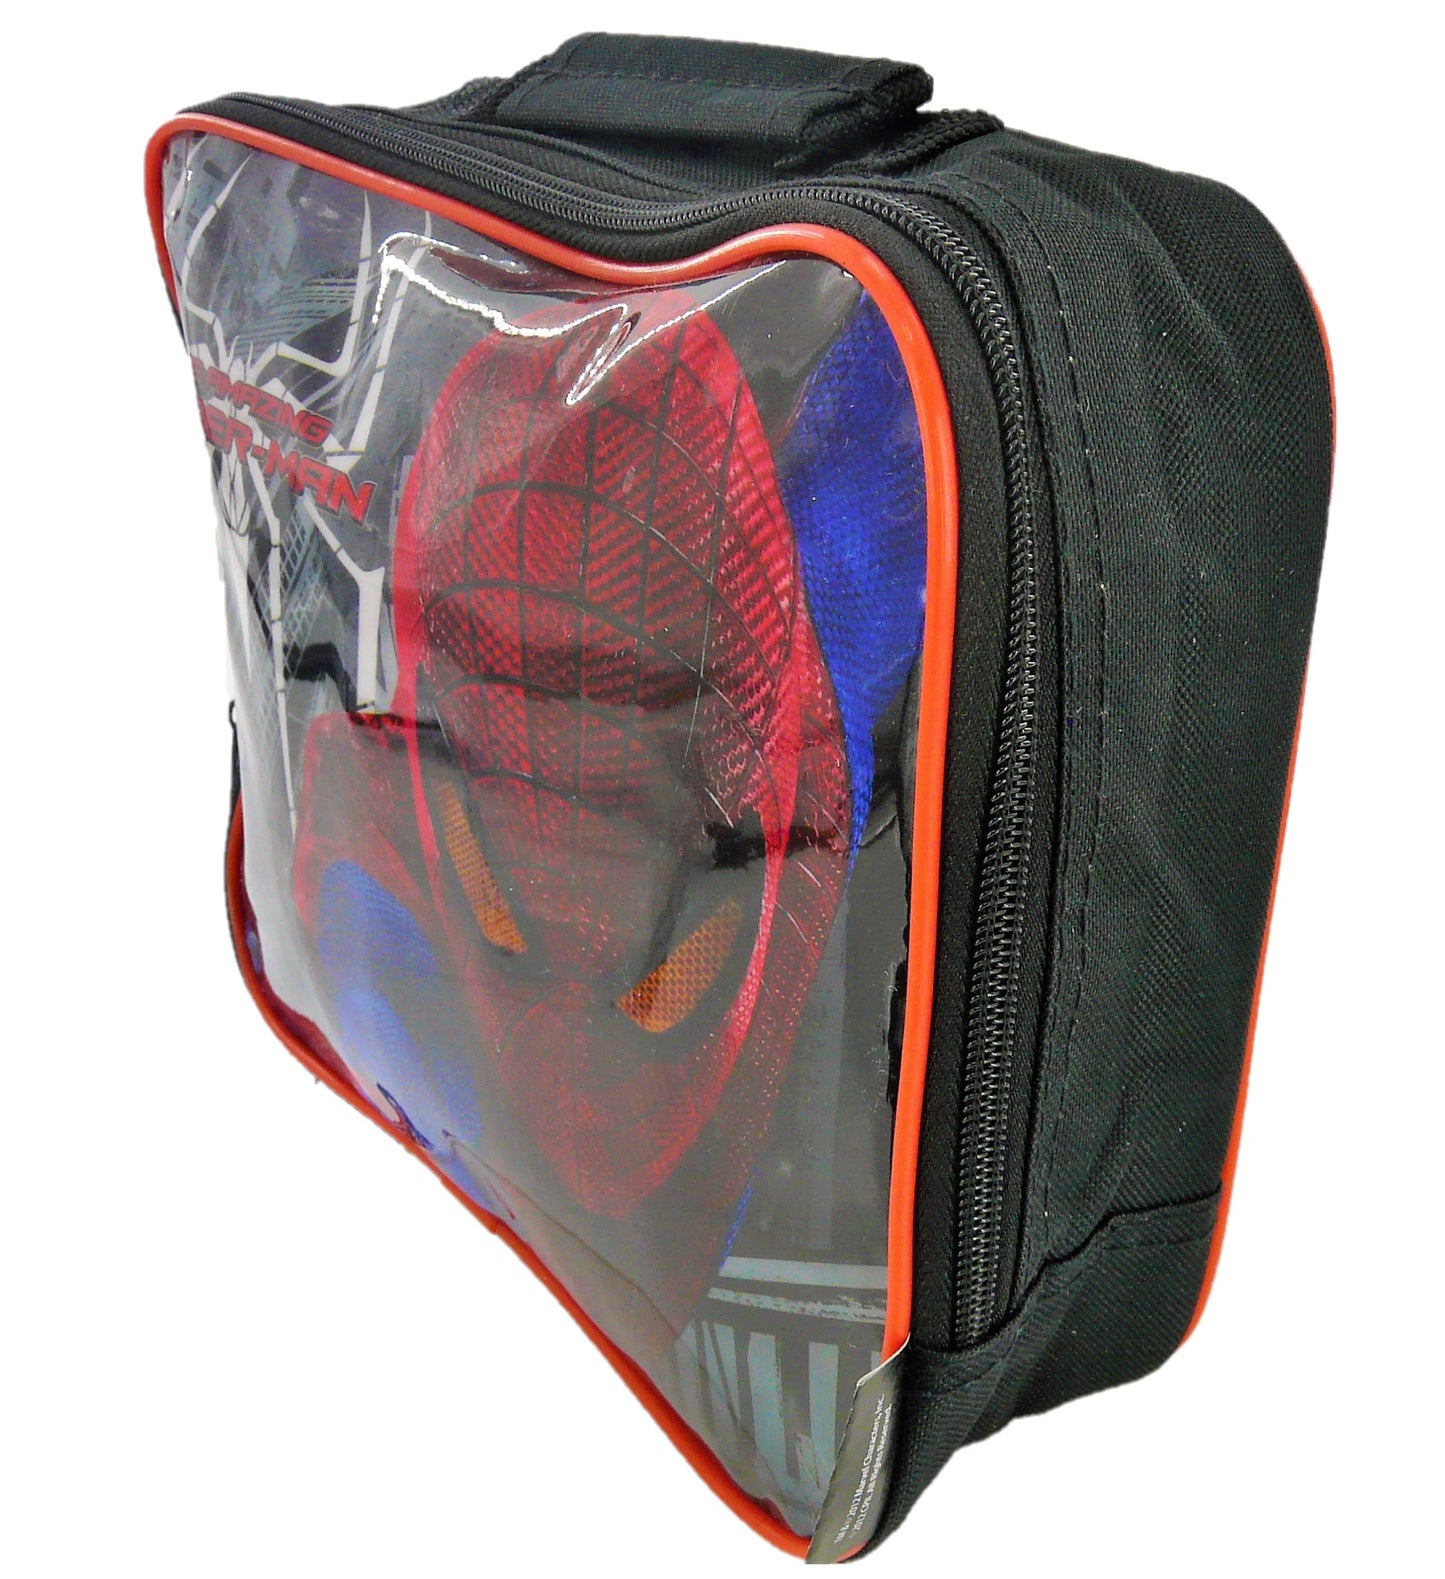 Spider-Man Children's Insulated Lunch Bag